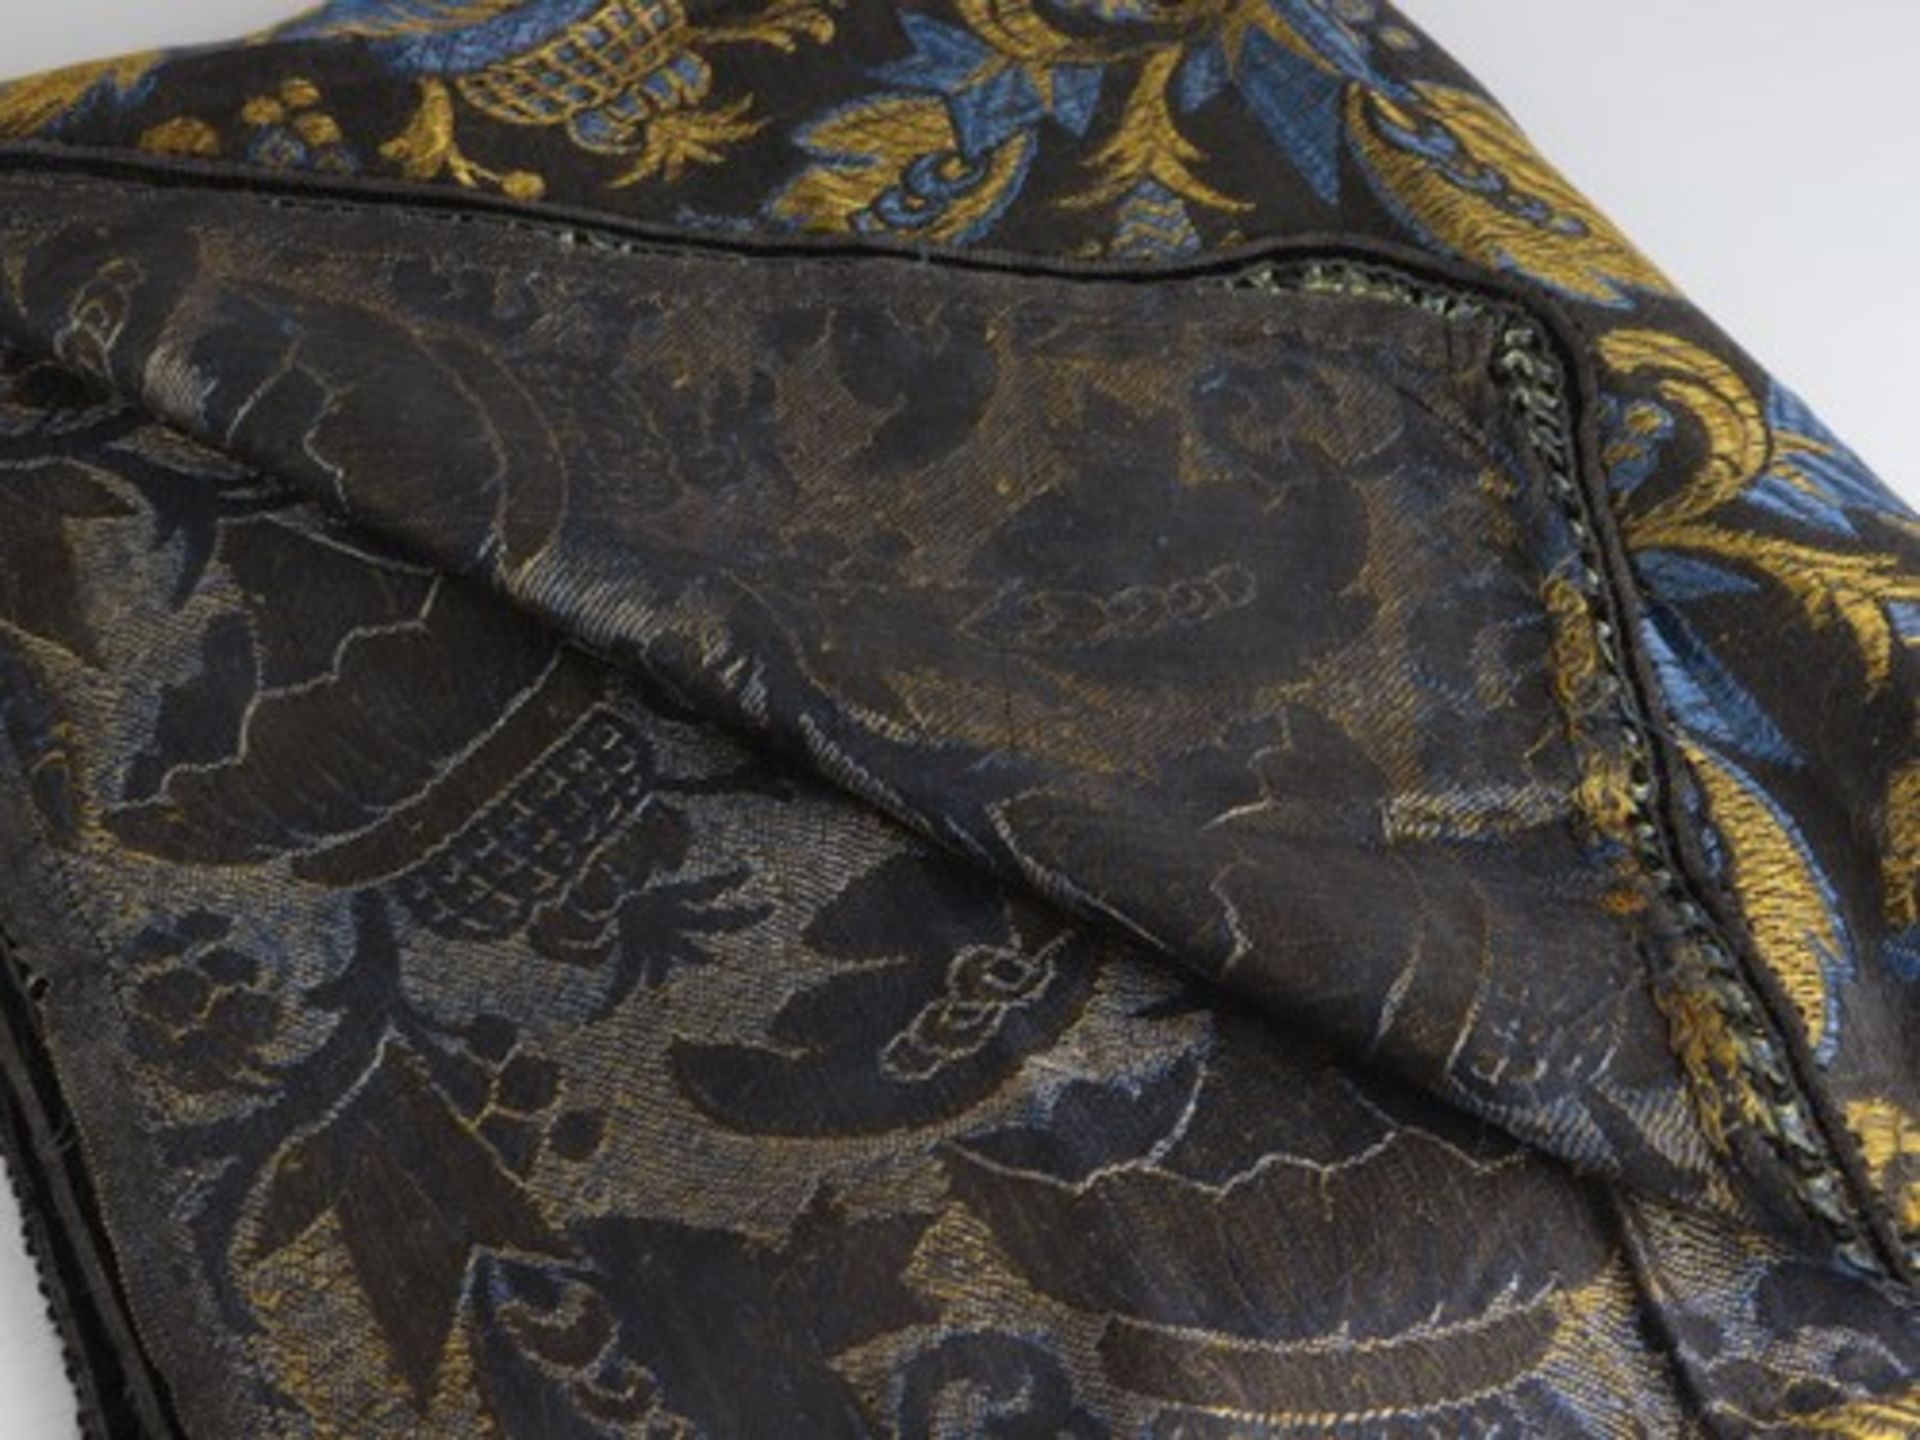 Tischdecke - Art-découm 1920, schwarz, gold, blau, orientalisch anmutendes florales Muster, - Image 3 of 3